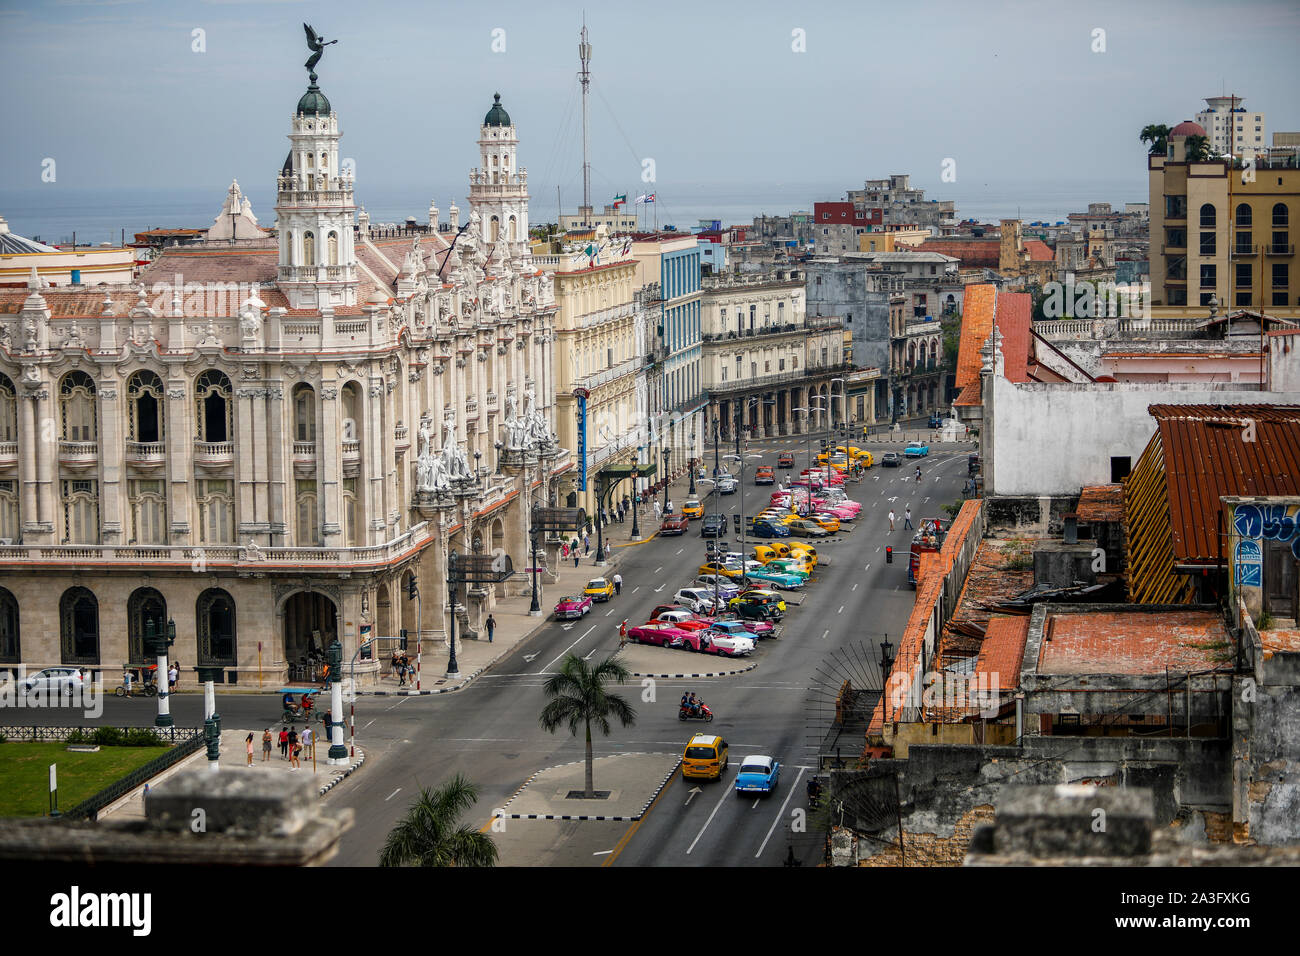 Vue générale de la ville de La Havane qui inclut sur la droite le théâtre de La Havane et Alicia Alonso le Paseo del Prado street. Banque D'Images